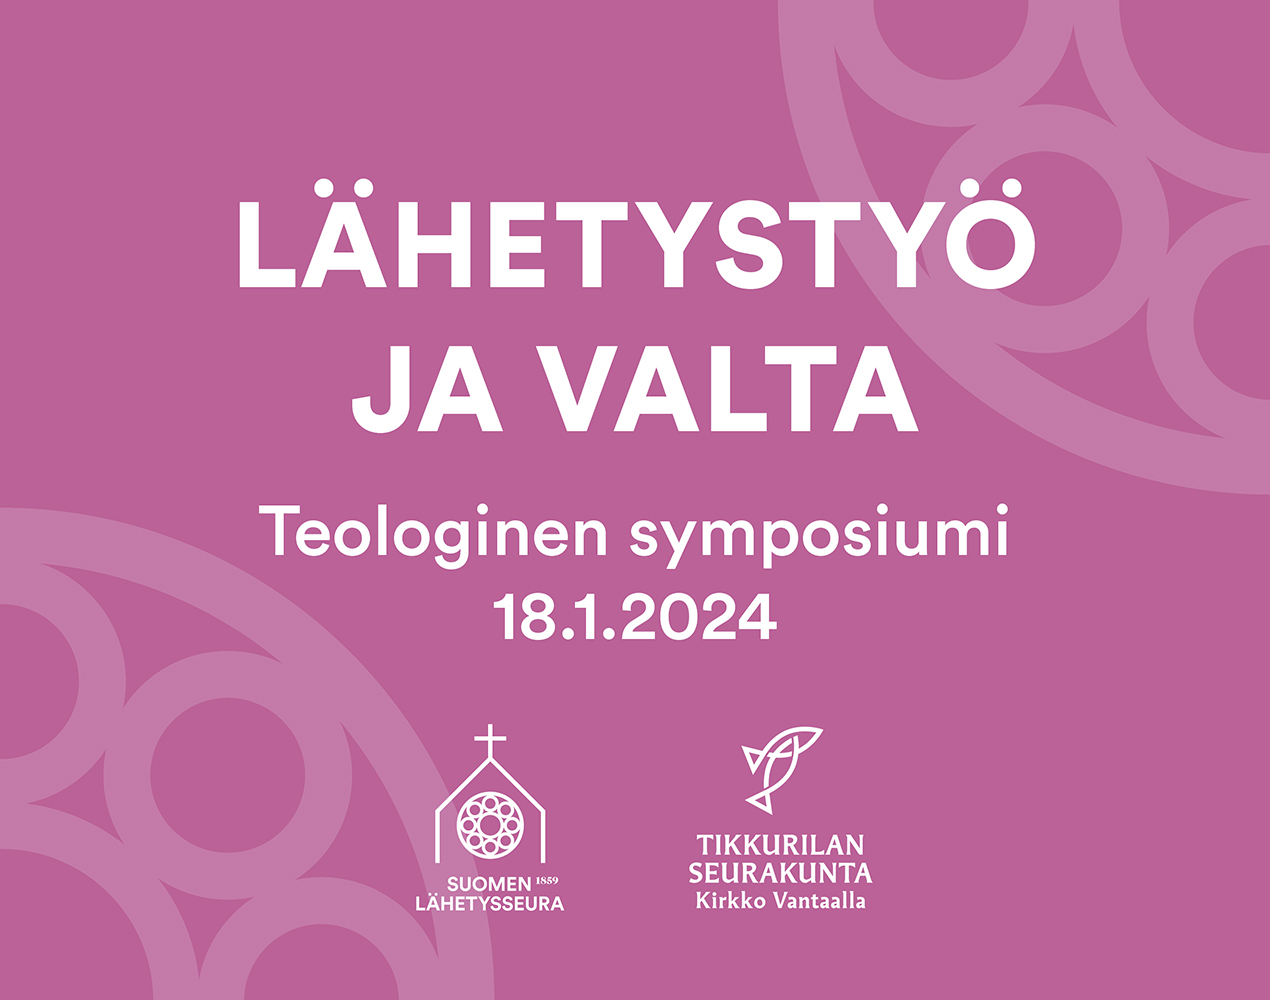 Lähetystyö ja valta. Teologinen symposiumi 18.4.2025.